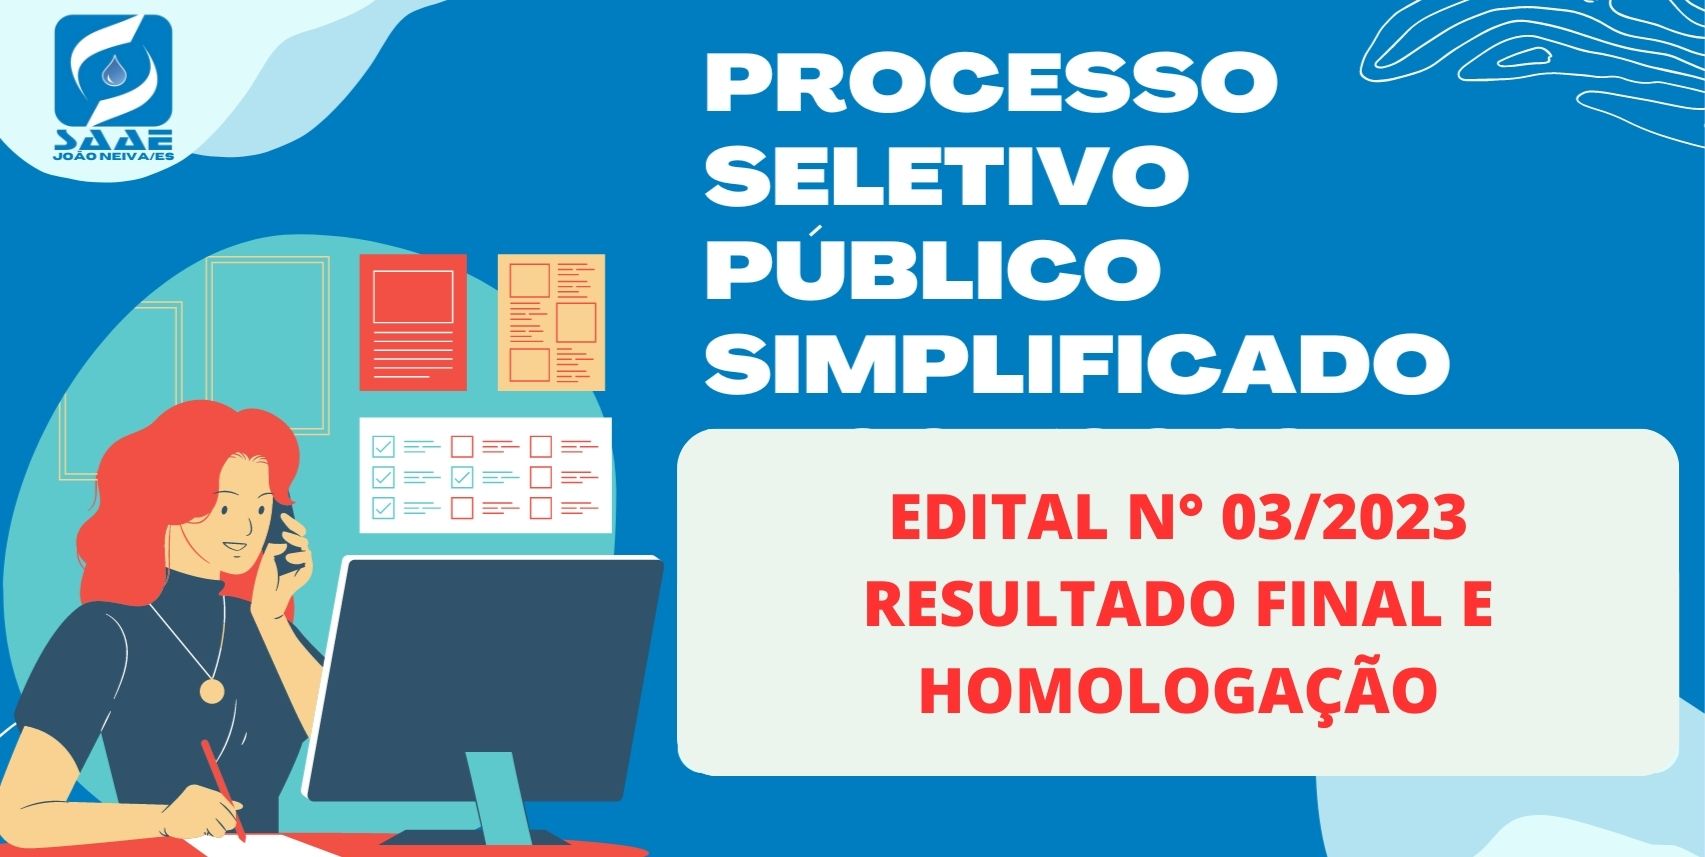 RESULTADO FINAL - PROCESSO SELETIVO PÚBLICO SIMPLIFICADO Nº 003/2023